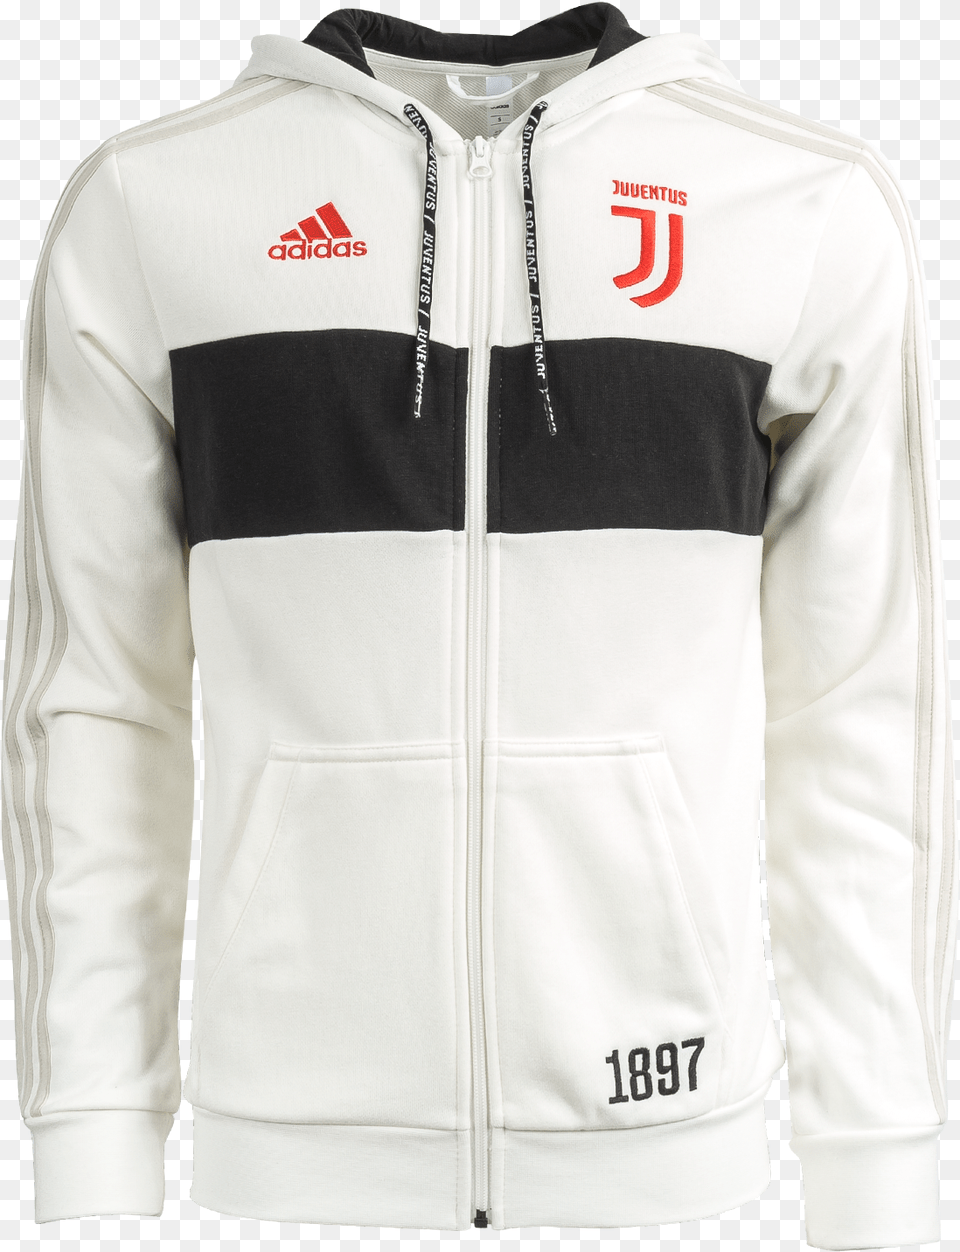 Juventus Full Zip Hoodie White Ez Football Hong Kong, Clothing, Coat, Jacket, Knitwear Png Image